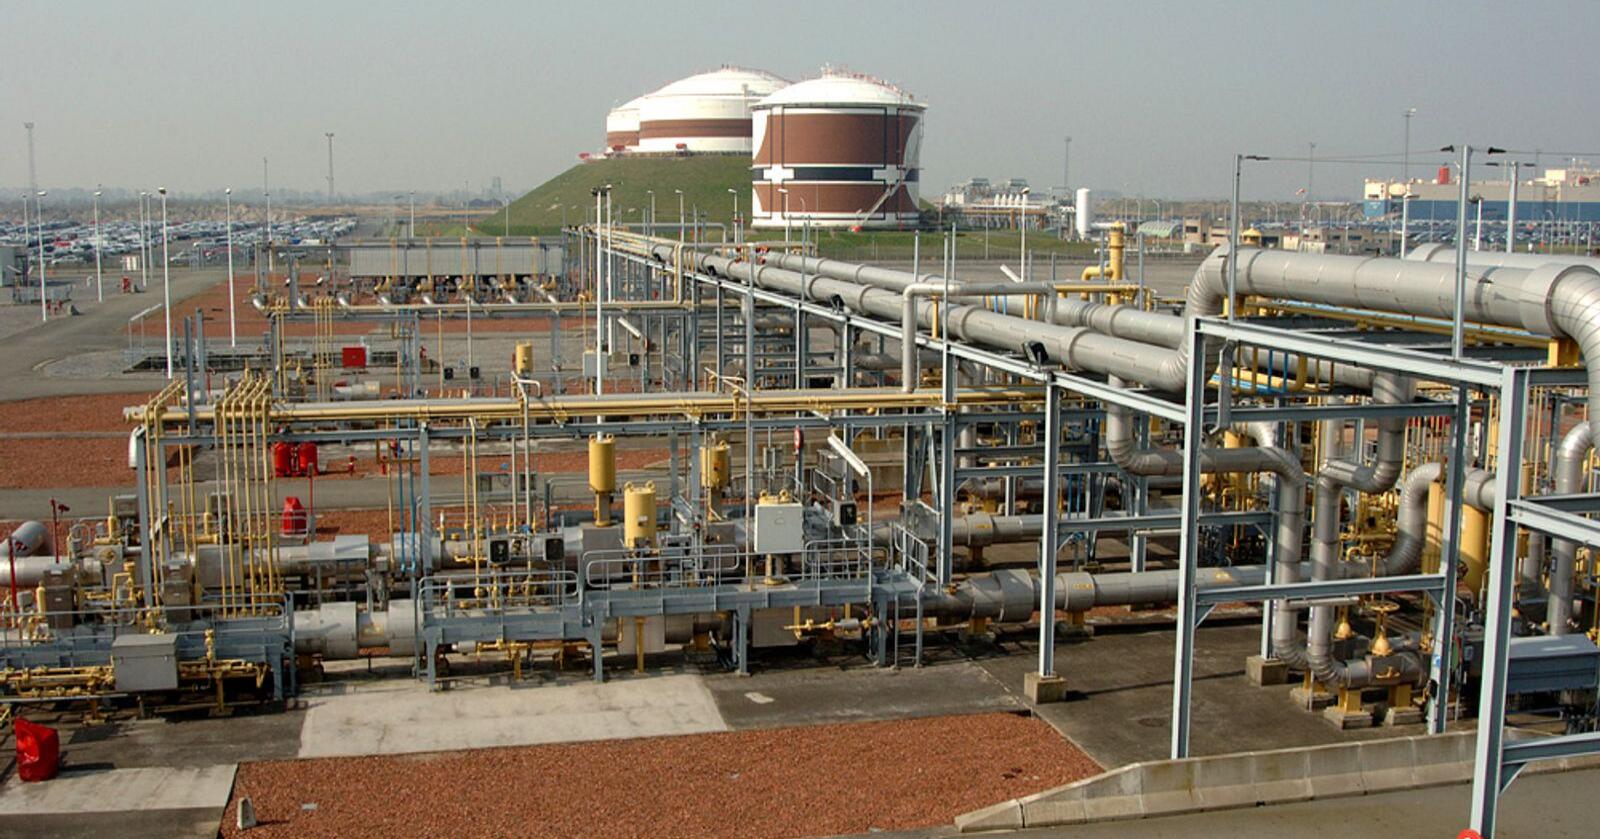 Gasscos terminal i Zeebrugge, der store mengder norsk gass strømmer inn i det europeiske markedet. Foto: Gassco